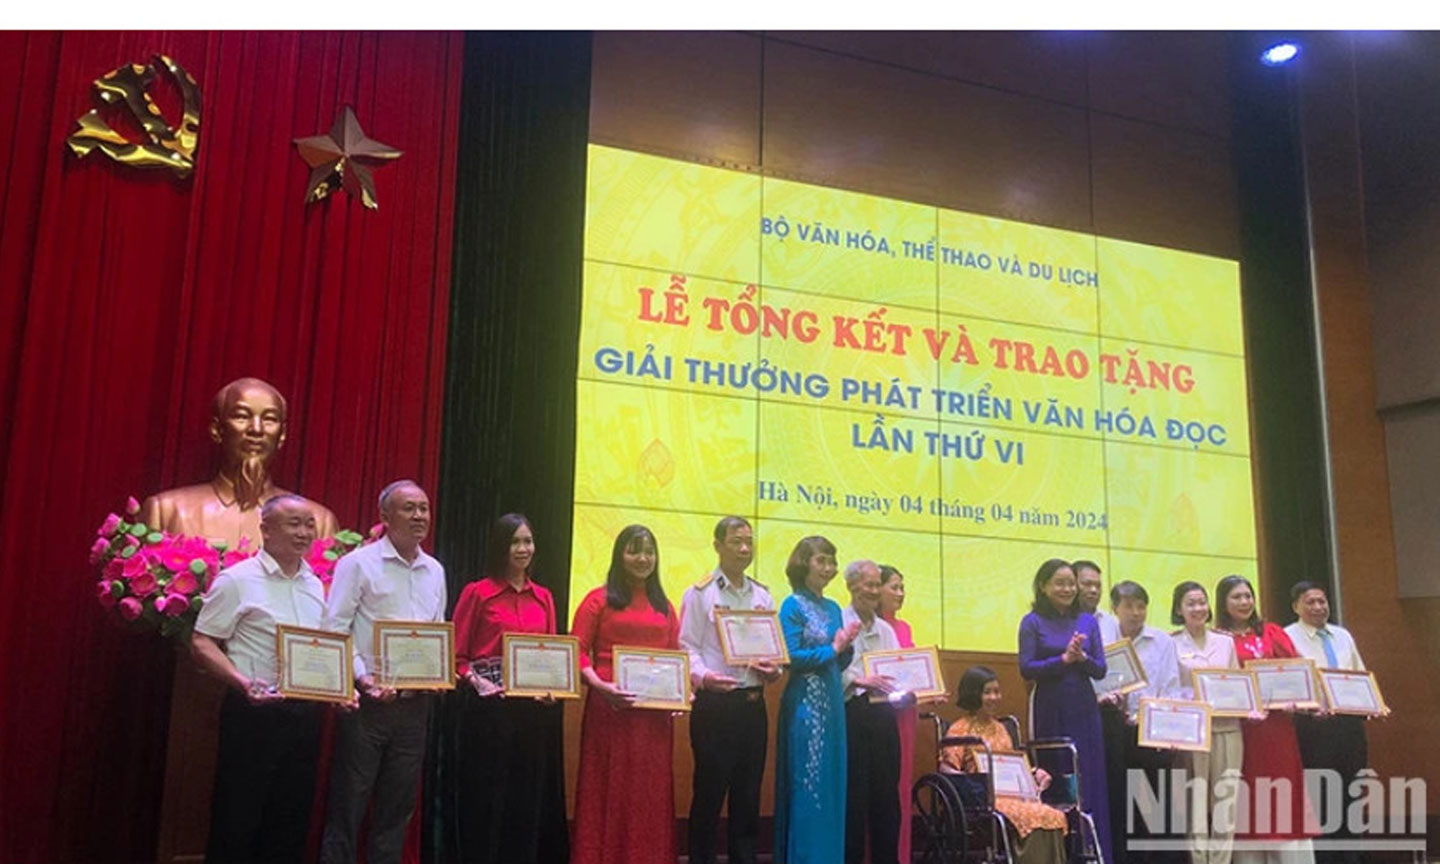 Các cá nhân nhận giải thưởng Phát triển Văn hóa đọc lần thứ VI.